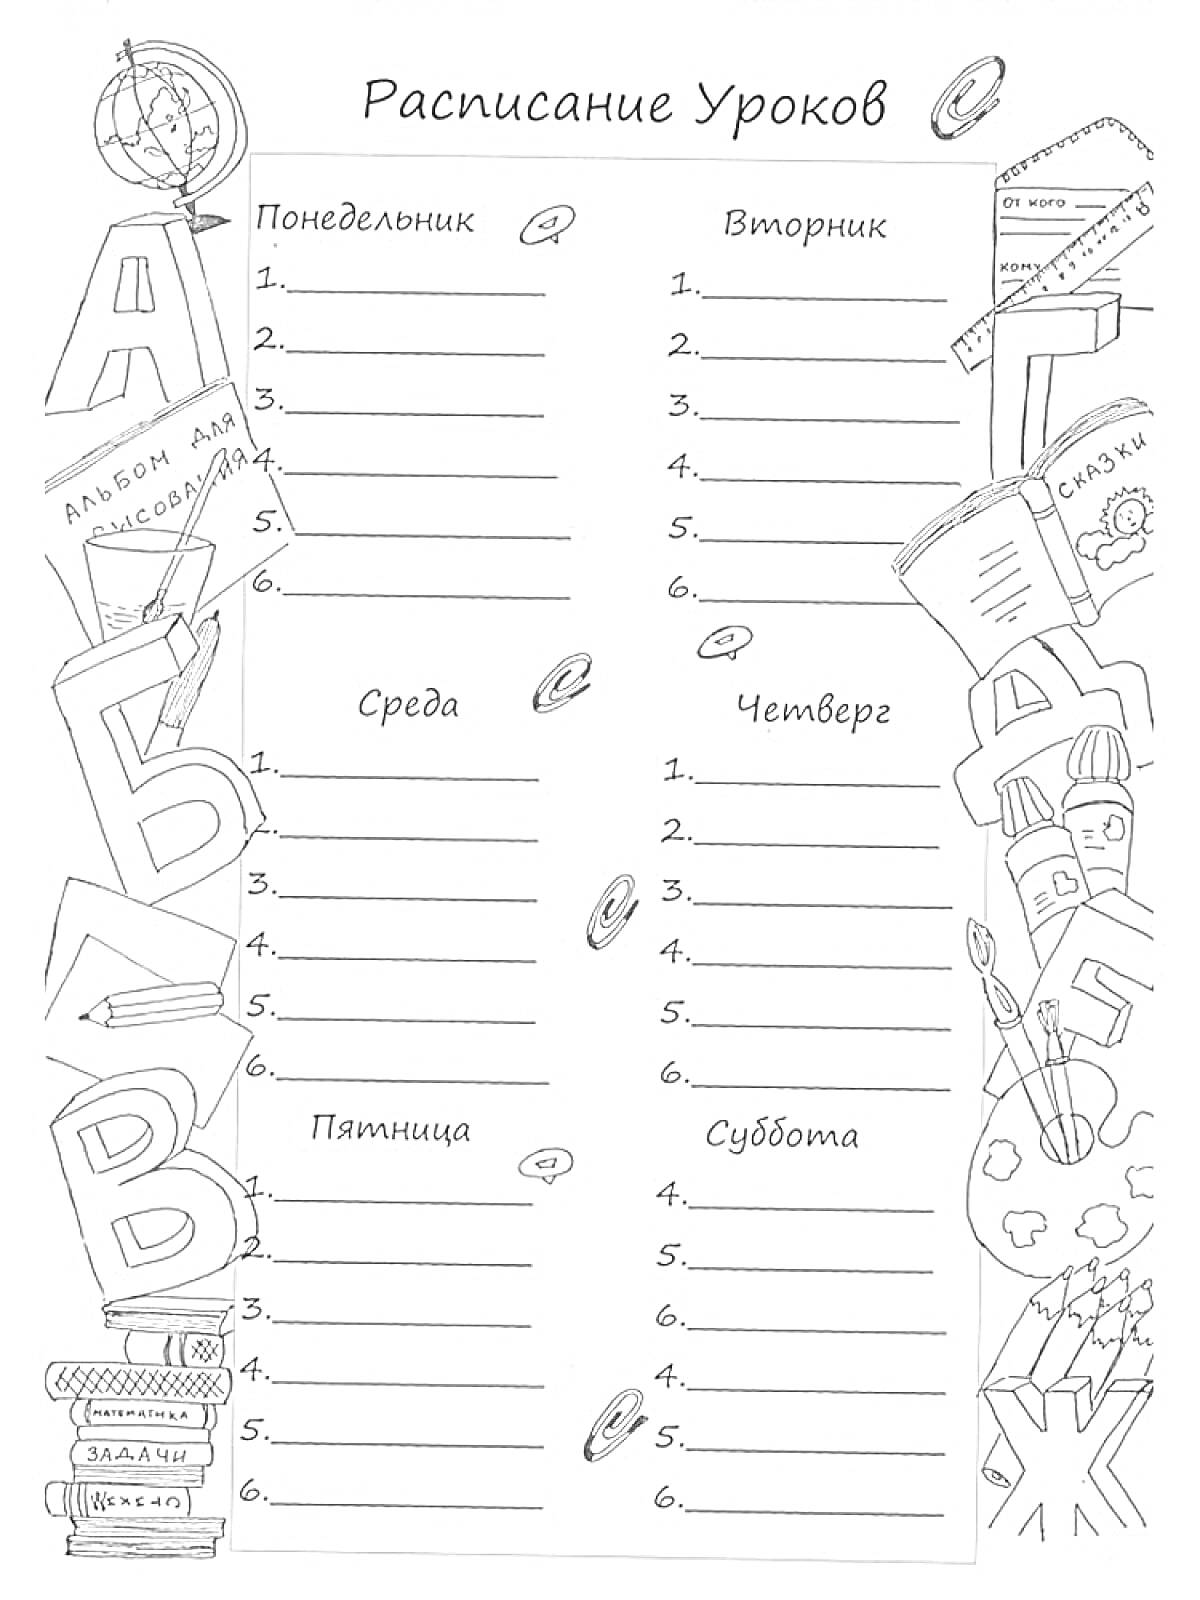 Раскраска Расписание уроков с книгами, глобусом, карандашами, буквами и другими школьными принадлежностями